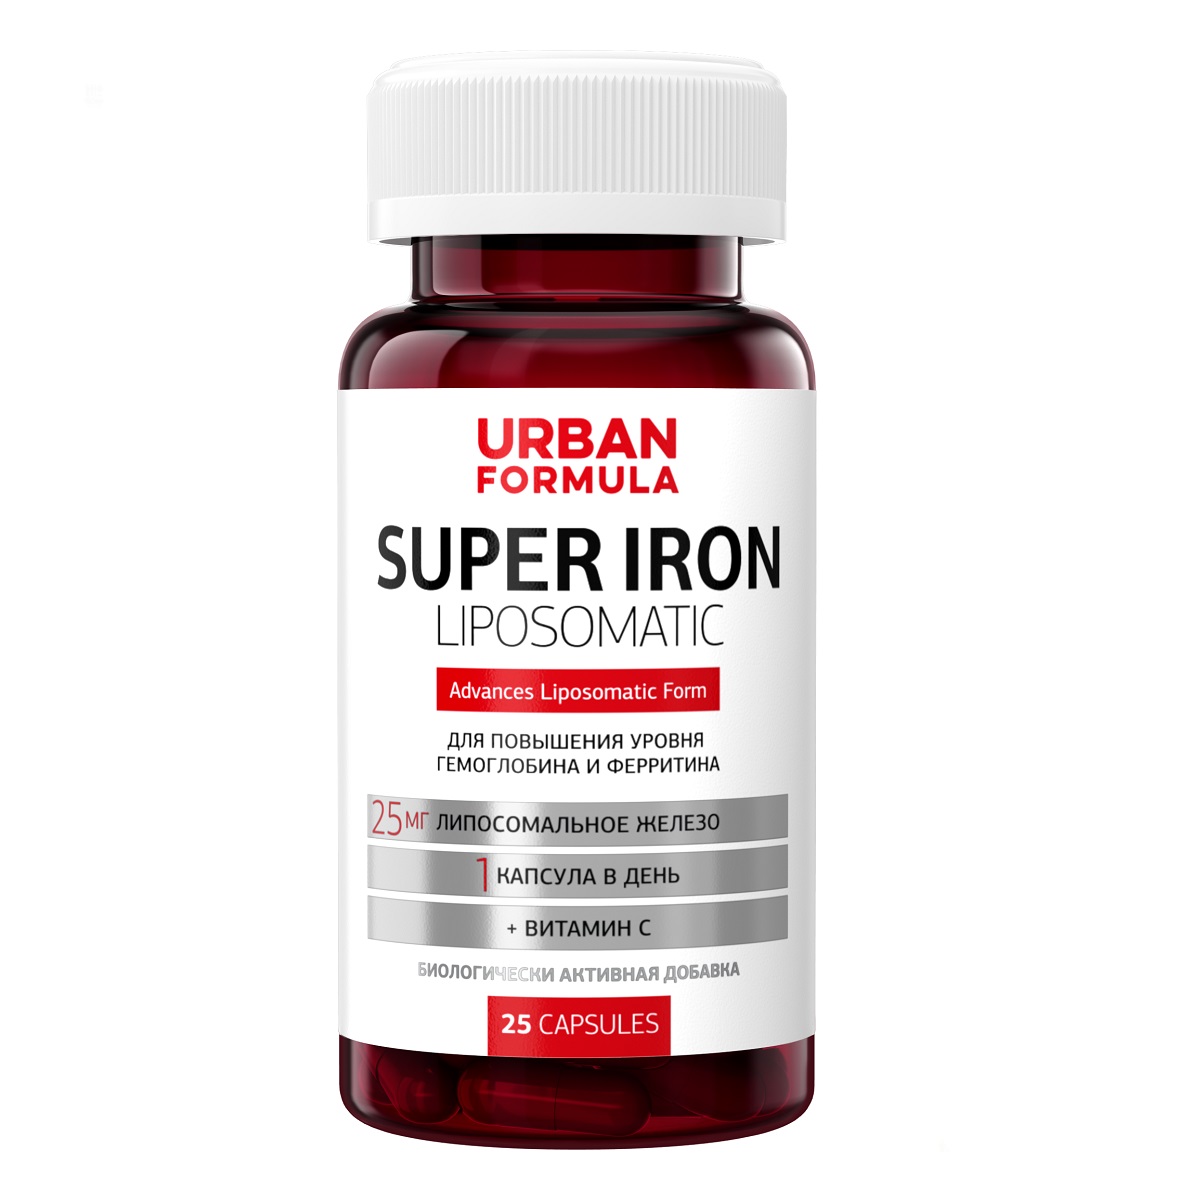 Urban Formula Комплекс Super Iron для повышения уровня гемоглобина и ферритина, 25 капсул (Urban Formula, Forte) urban formula super body slim extreme